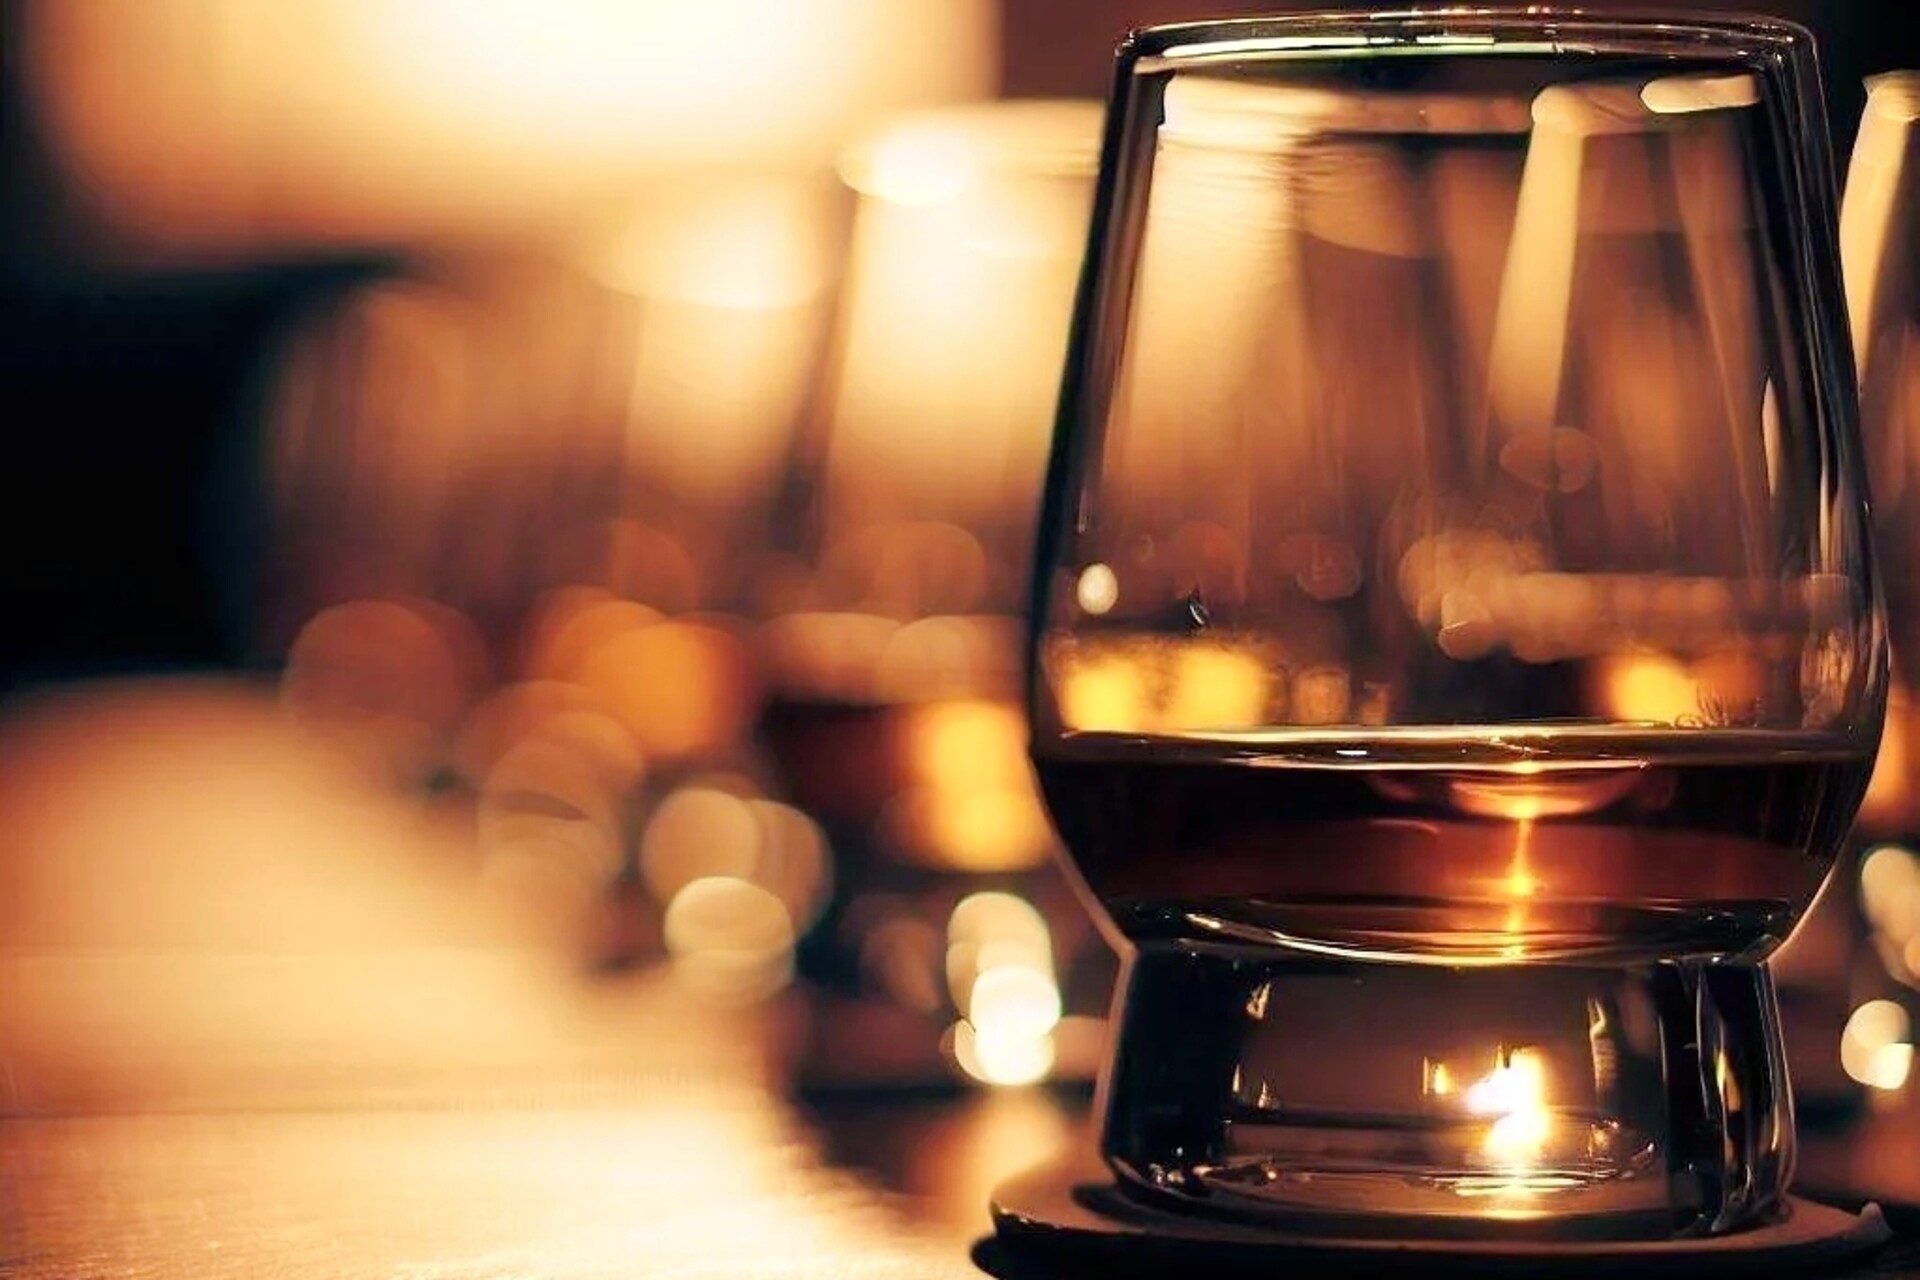 Whisky Tasting: Rauch und Torf geprägte Malt Whiskys